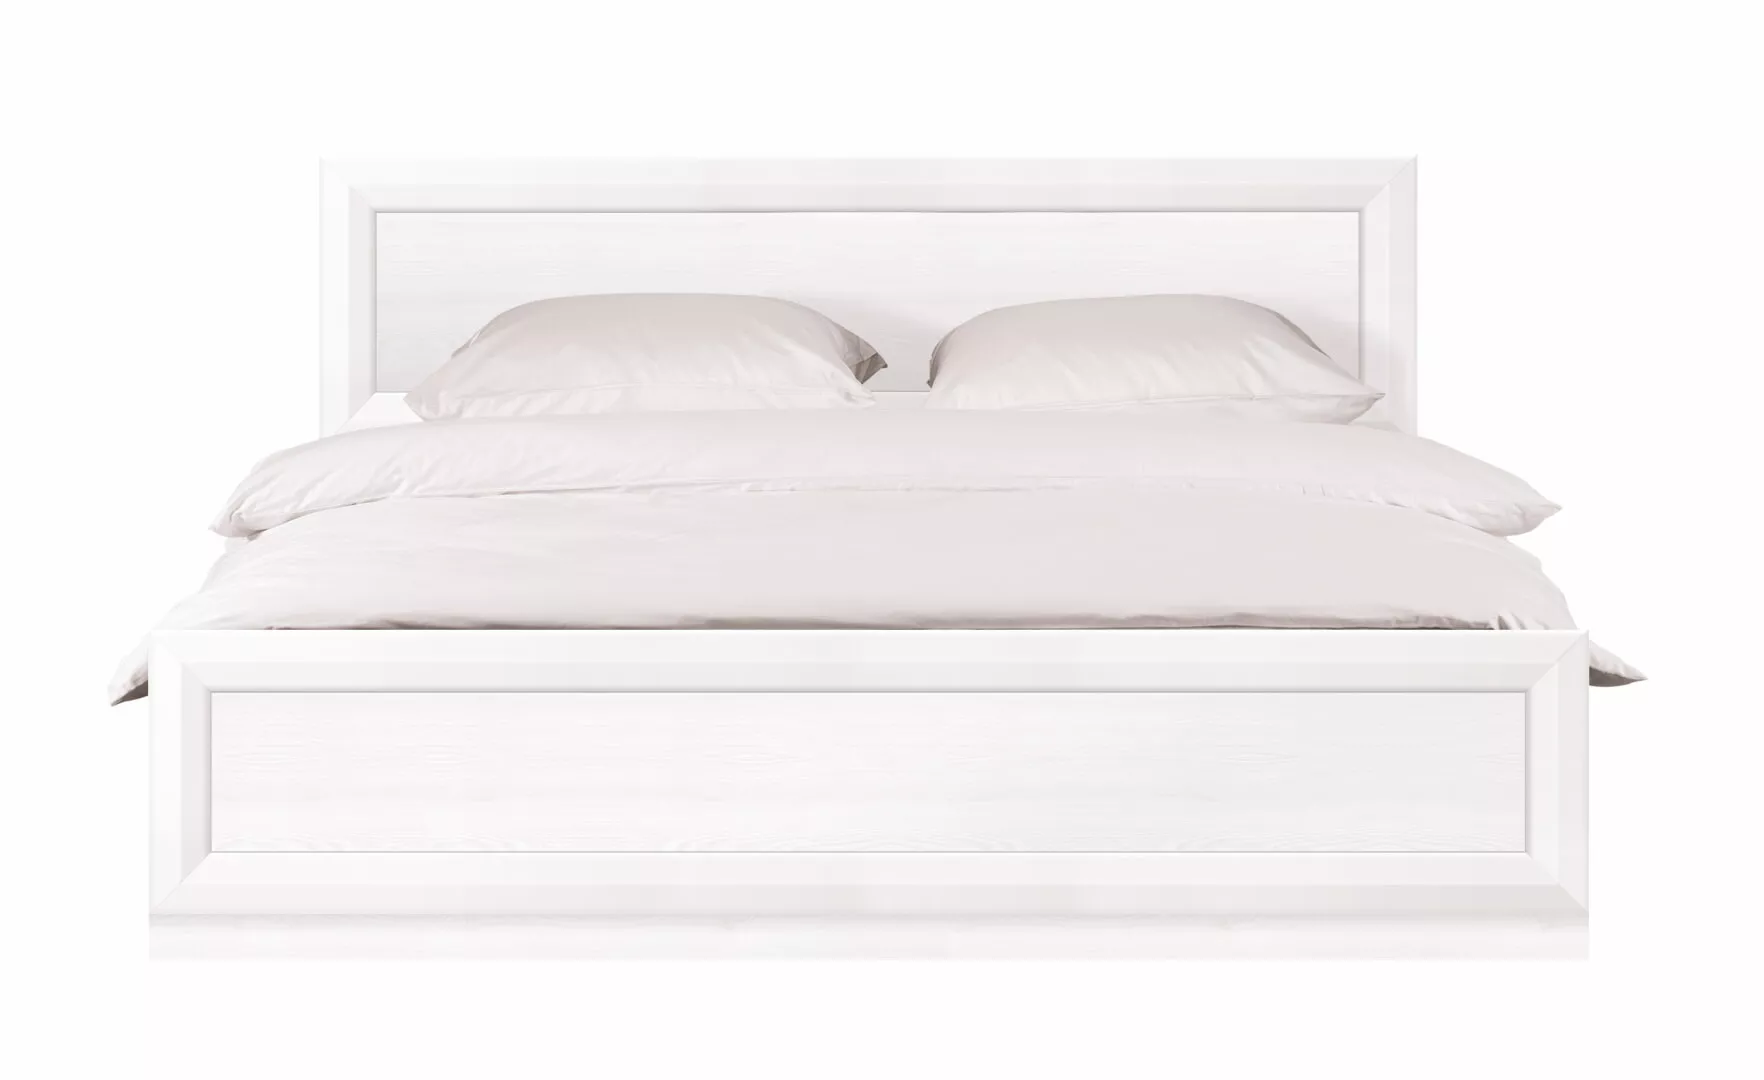 Спальня | Кровати | МАЛЬТА Кровать LOZ 160x200 N с подъемным механизмом Мебель ☆ IDEA в Севастополе| BRW, Брест anons